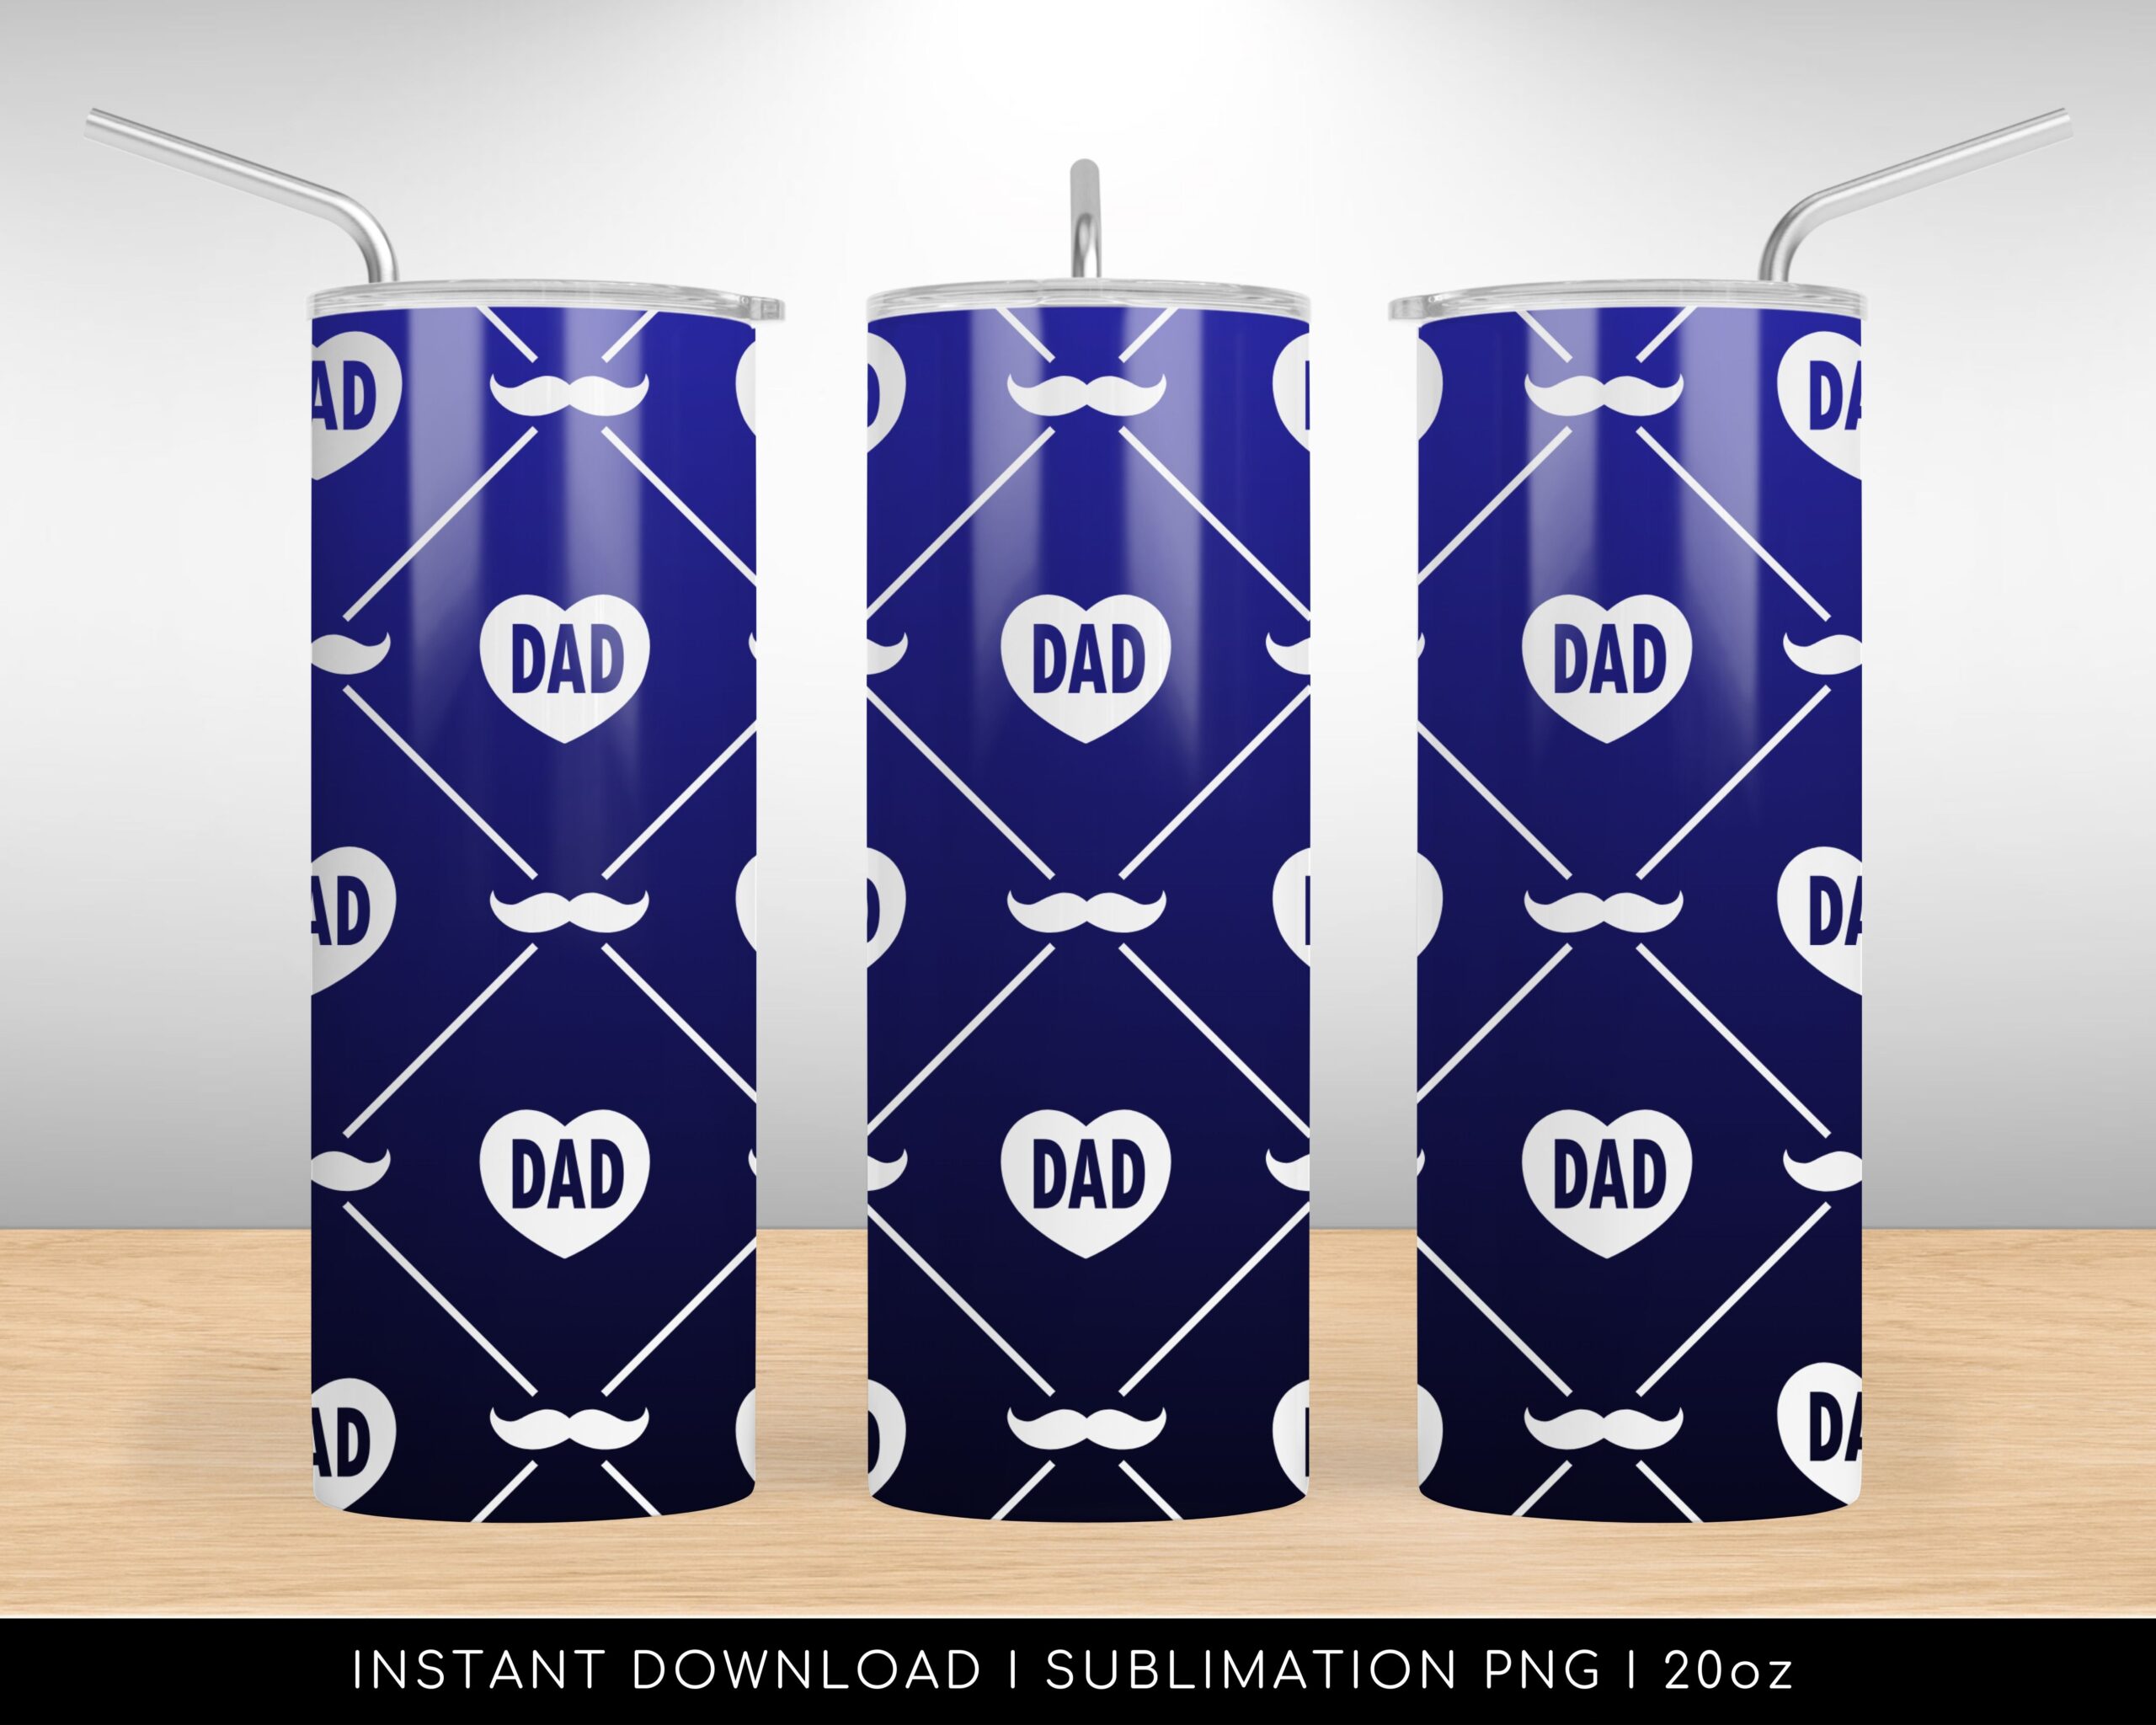 Tumbler Design PNG File for Sublimation. Dad Heart Mustache Blue Pattern, 20 oz Skinny Tumbler Wrap Design PNG File. Instant Download